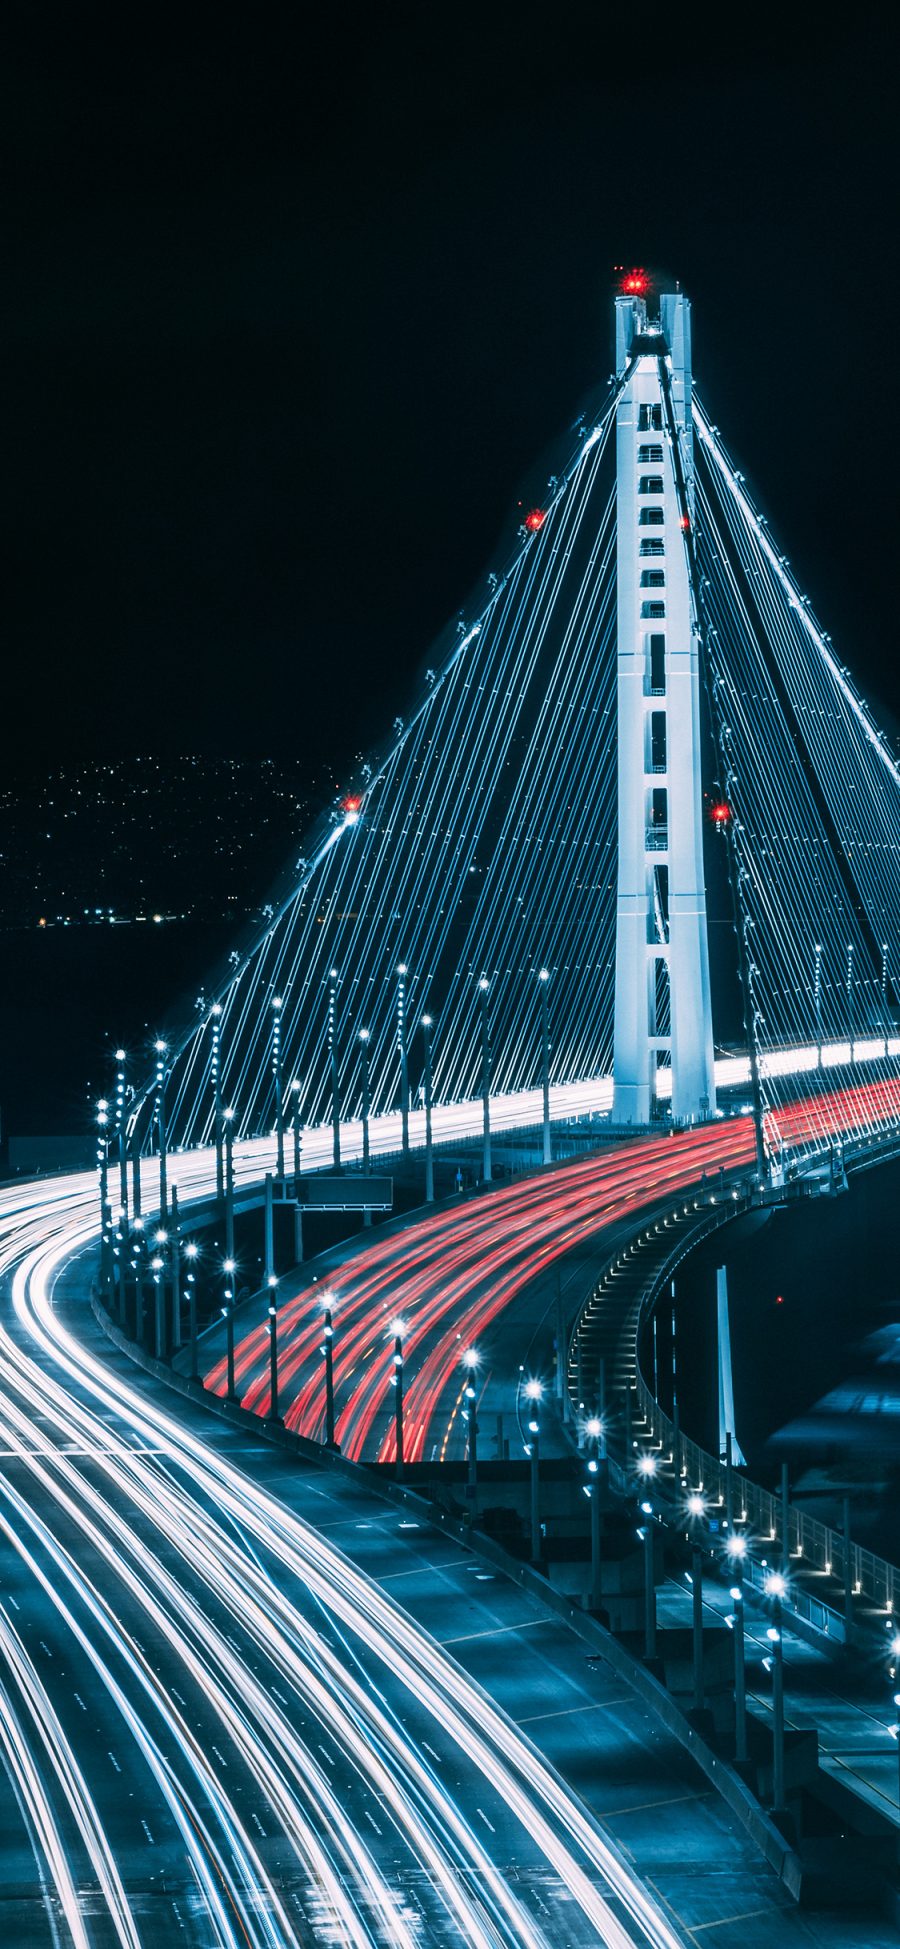 [2436×1125]夜景 车流 灯光 延时 桥梁 苹果手机壁纸图片